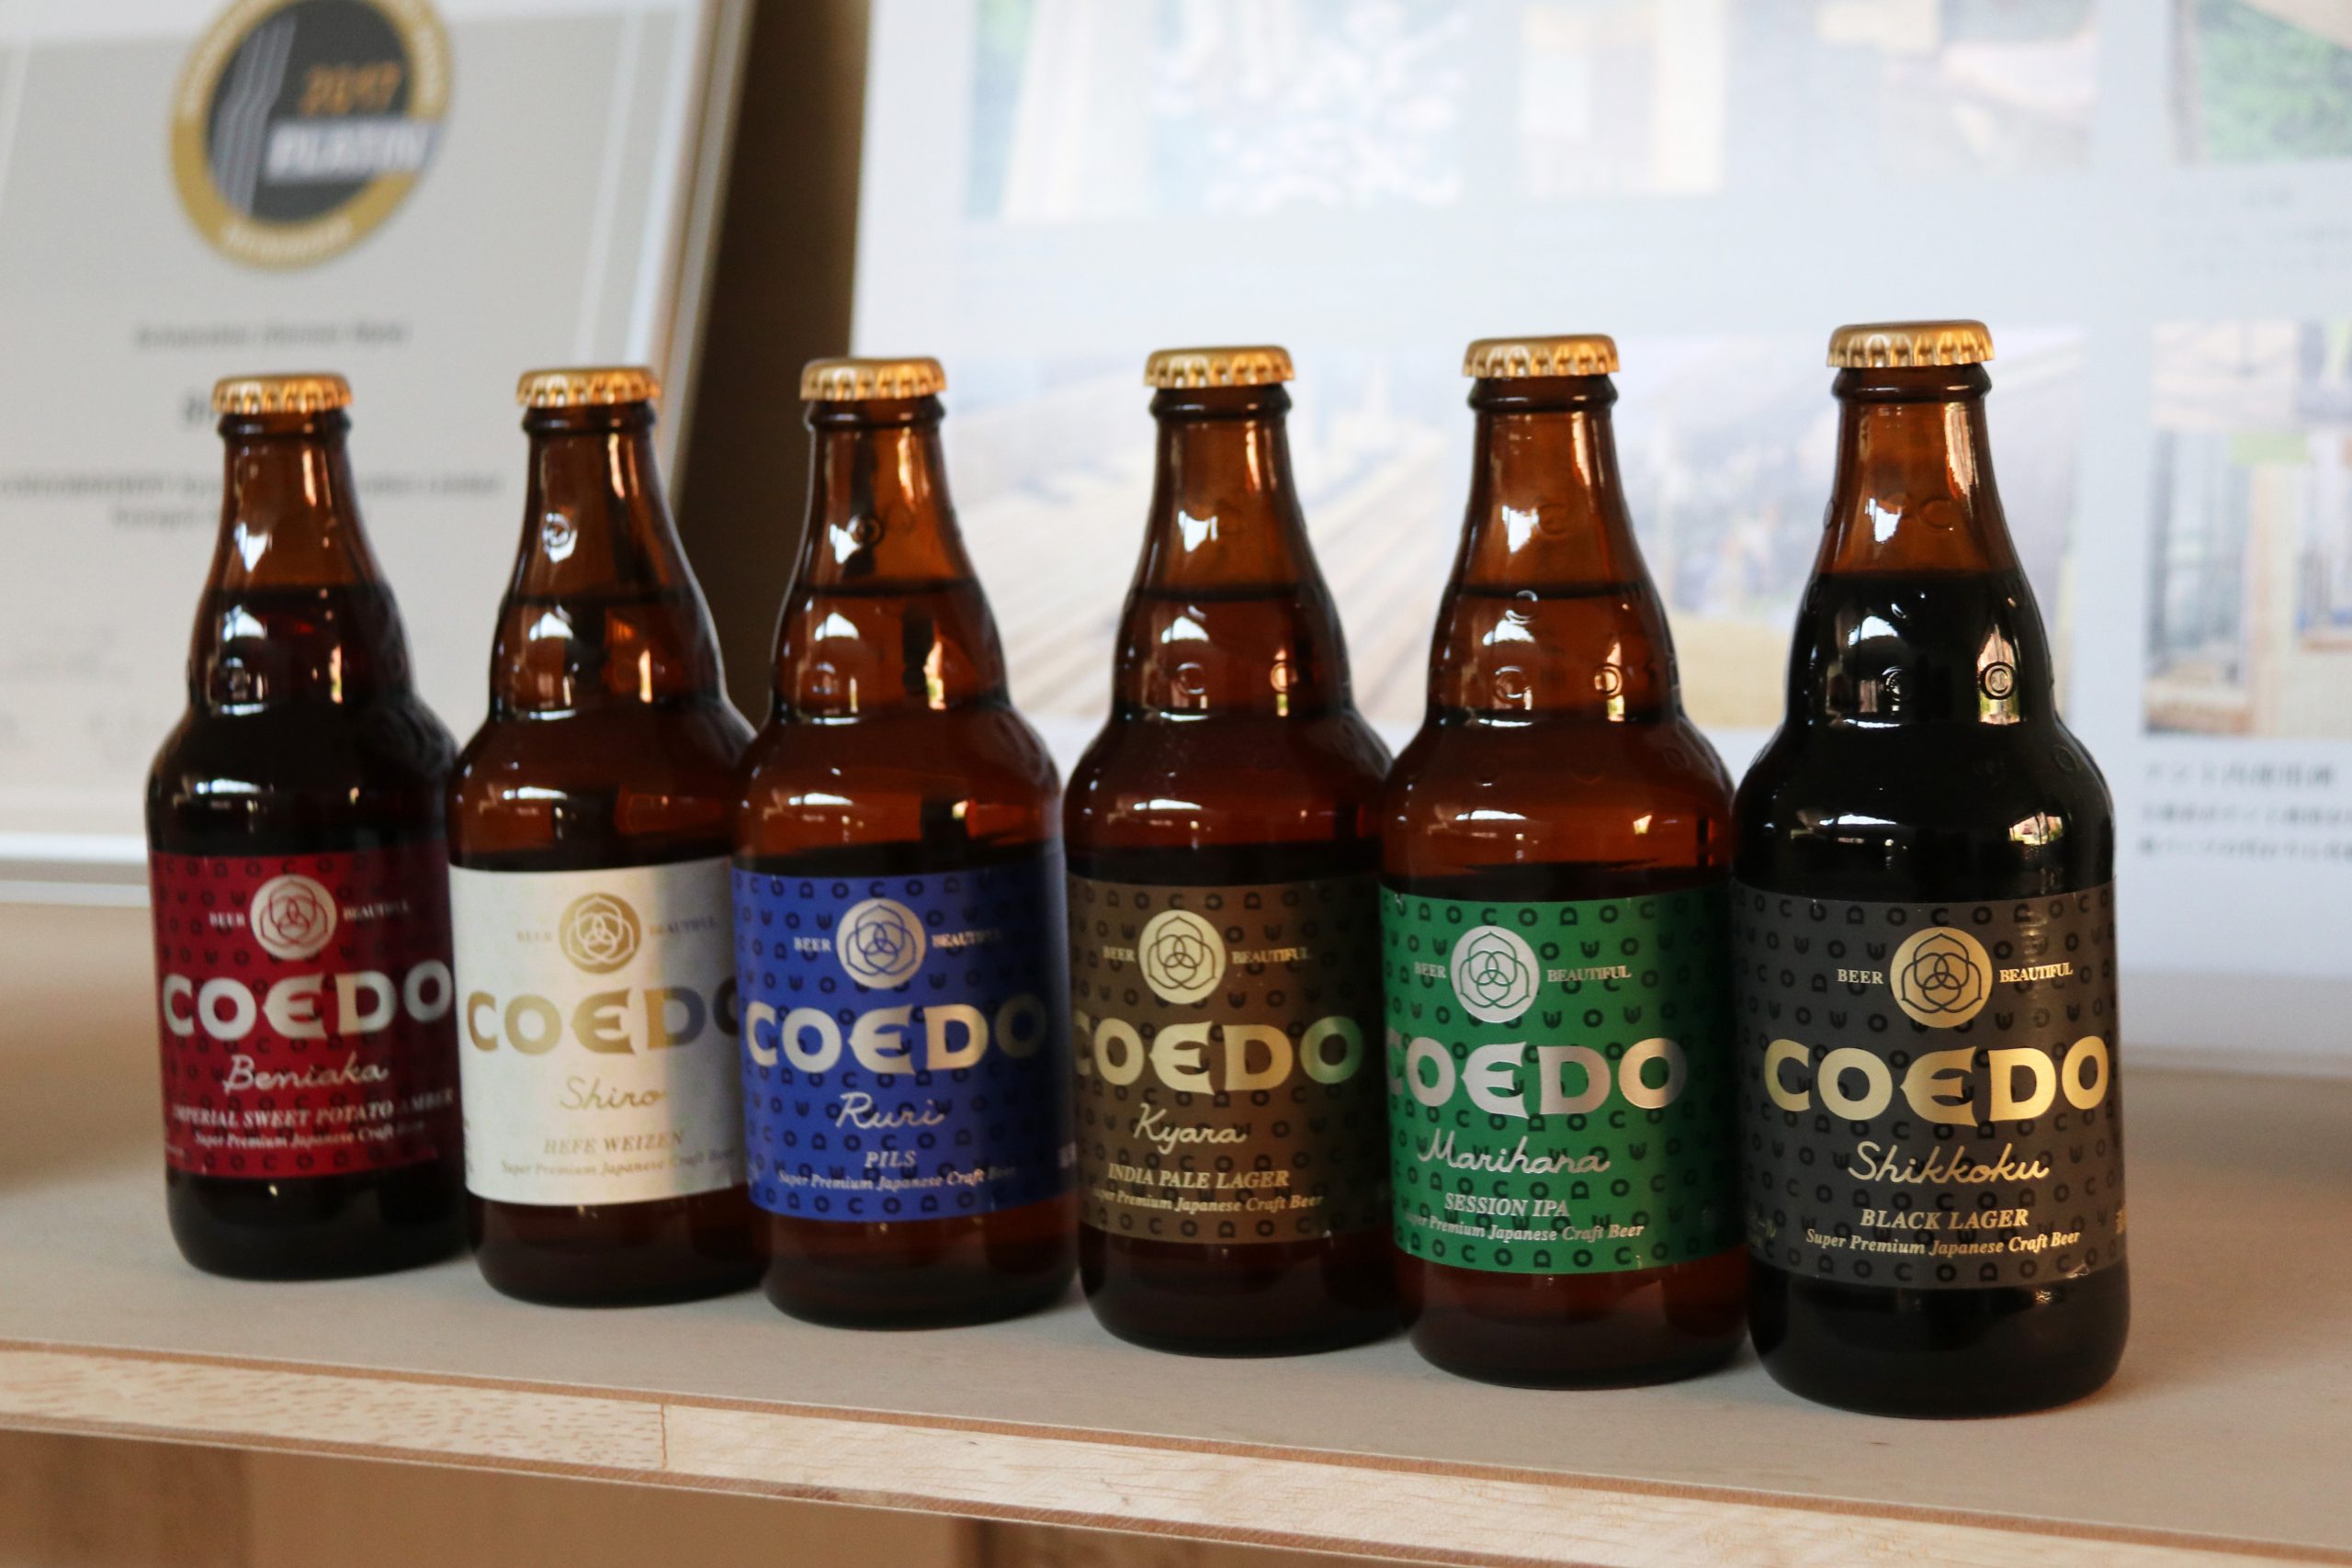 川越から世界へ羽ばたくクラフトビール「COEDO」。地ビールからの脱却で勝負をかけた2代目の挑戦